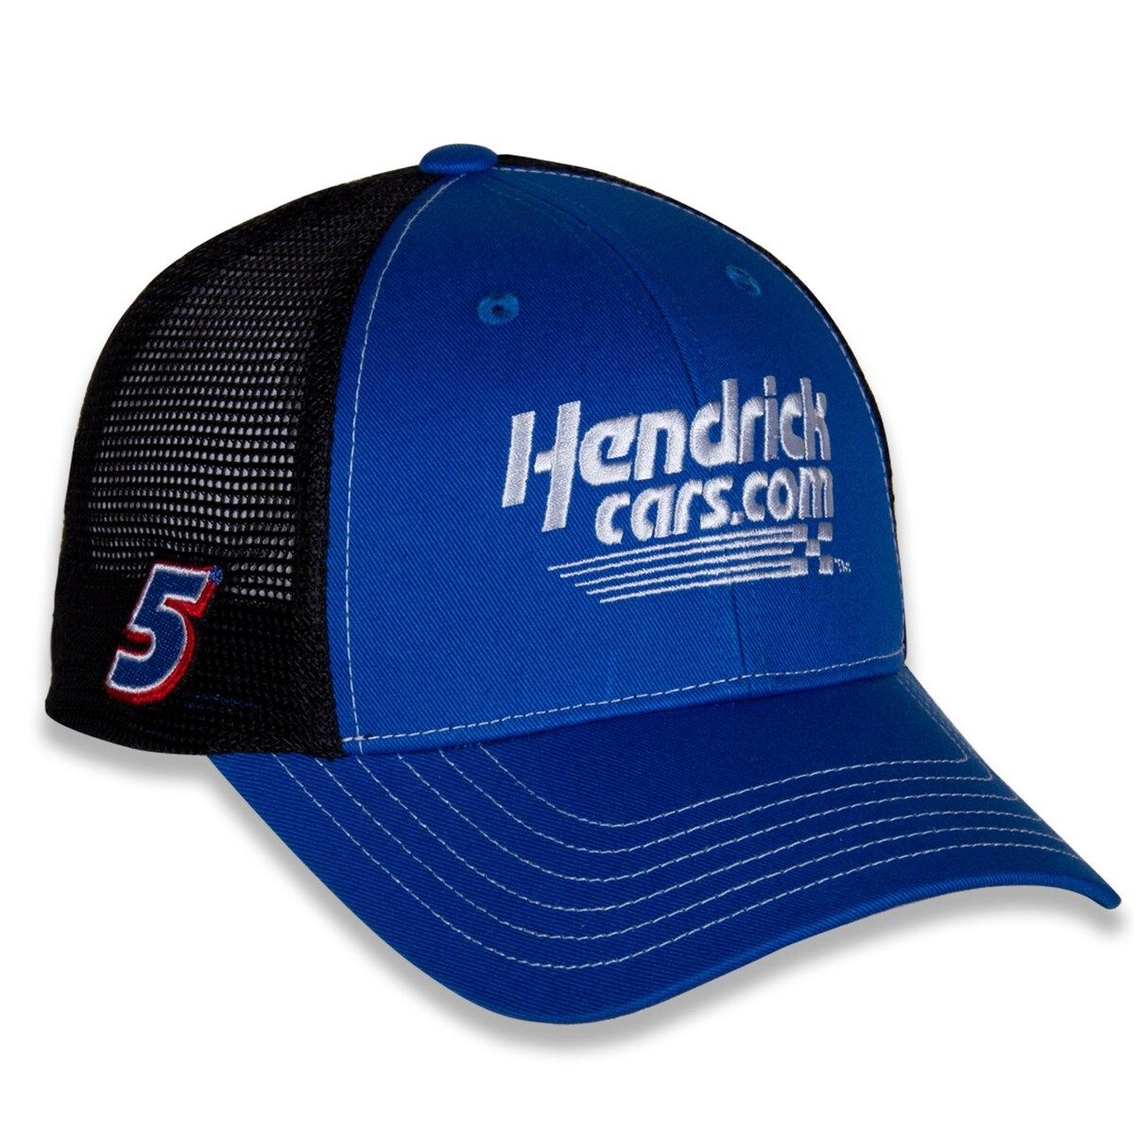 Hendrick Motorsports Team Collection Men's Royal/Black Kyle Larson Team Sponsor Adjustable Hat - Image 4 of 4